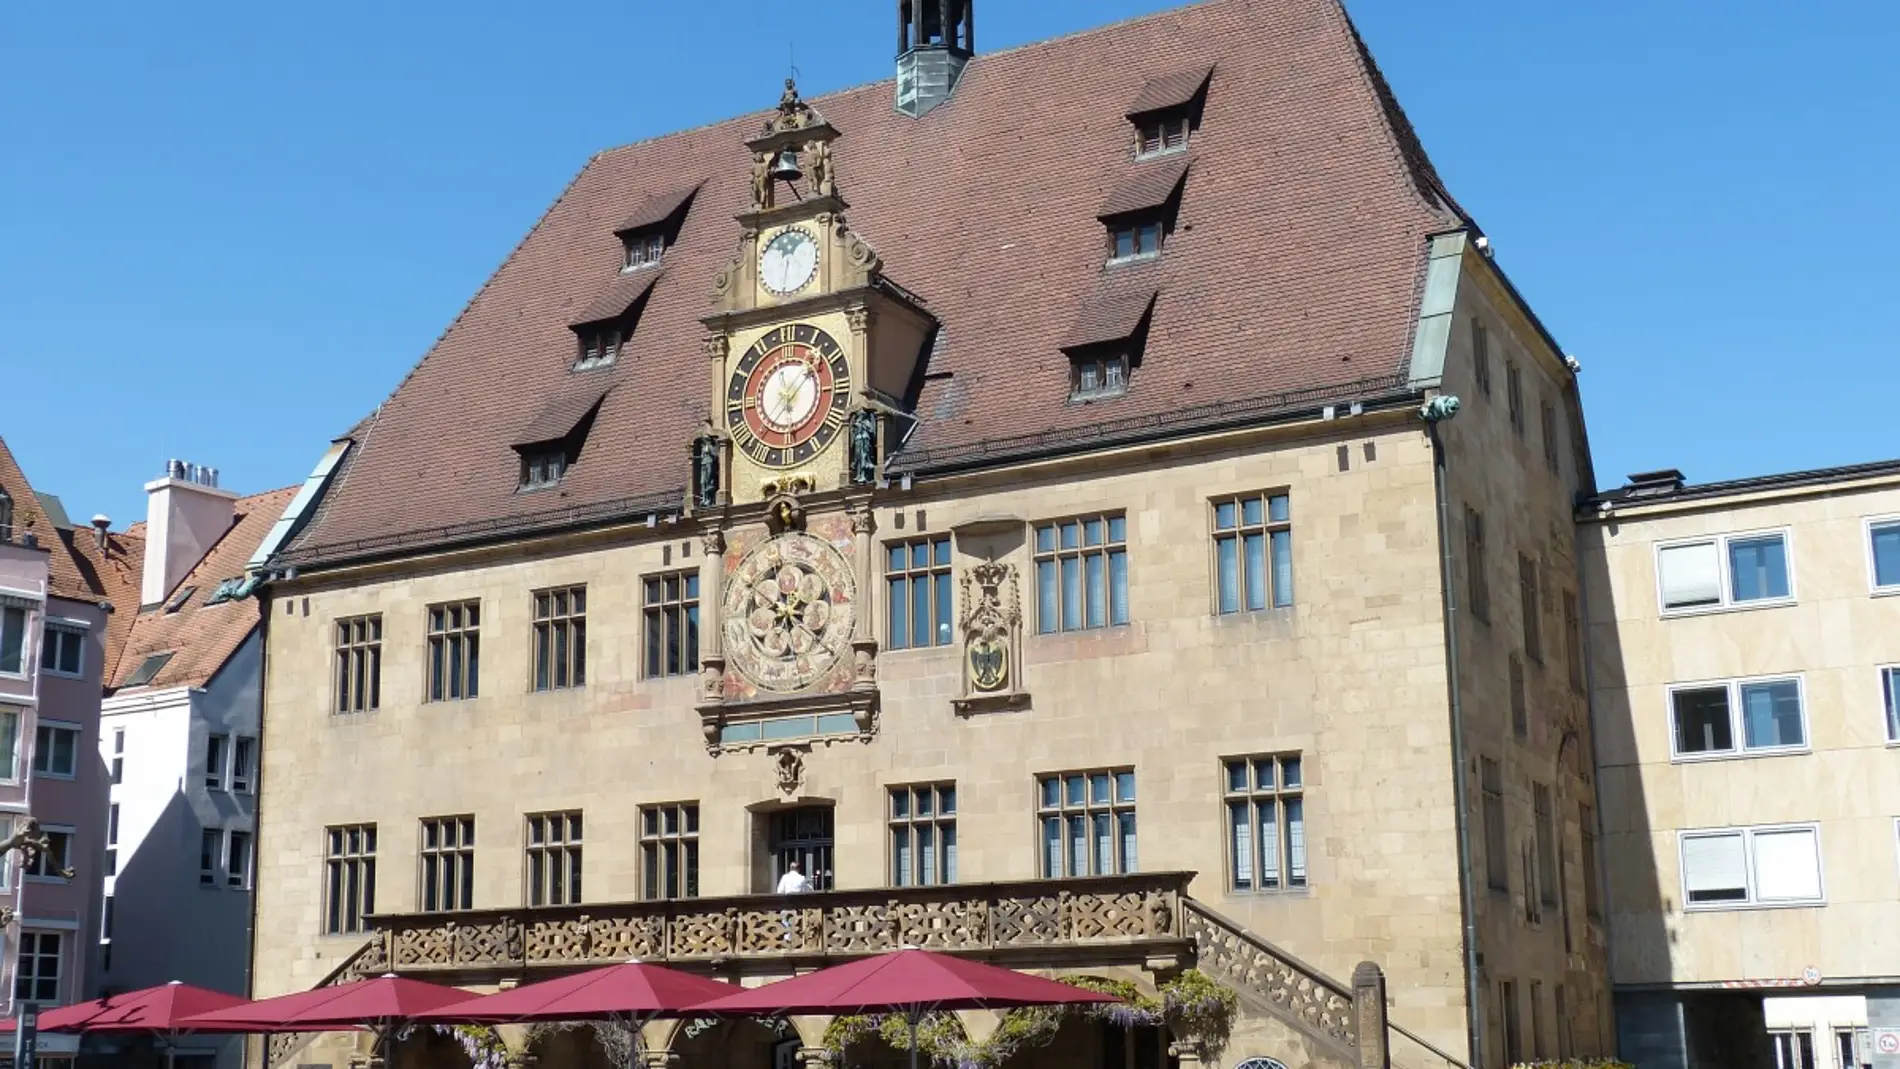 Reloj astronómico Heilbronn: historia y datos curiosos que te sorprenderán